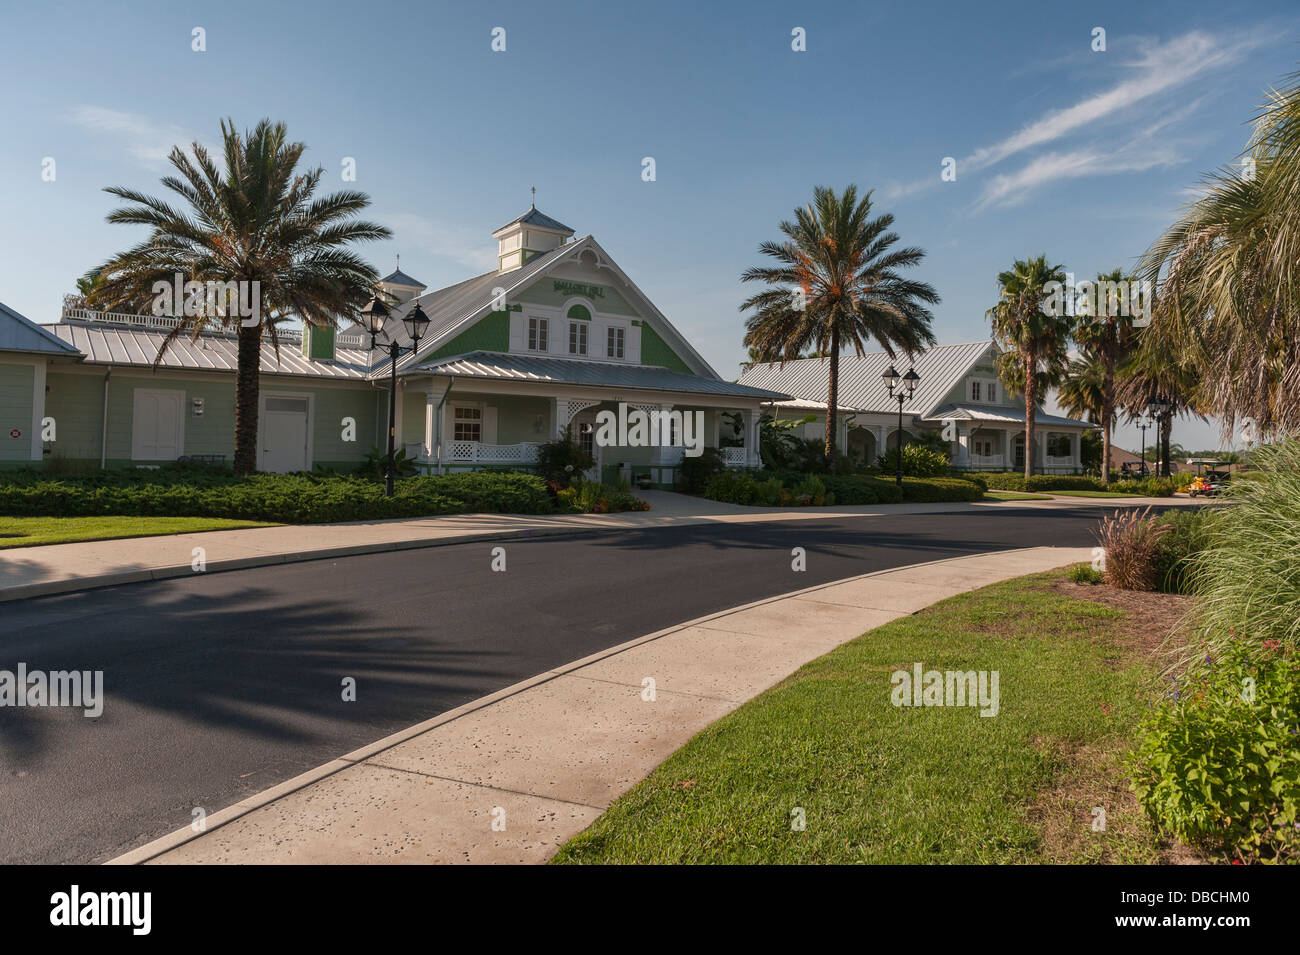 La Mallory Hill Country Club per campi da golf situati nei villaggi, Florida. Foto Stock